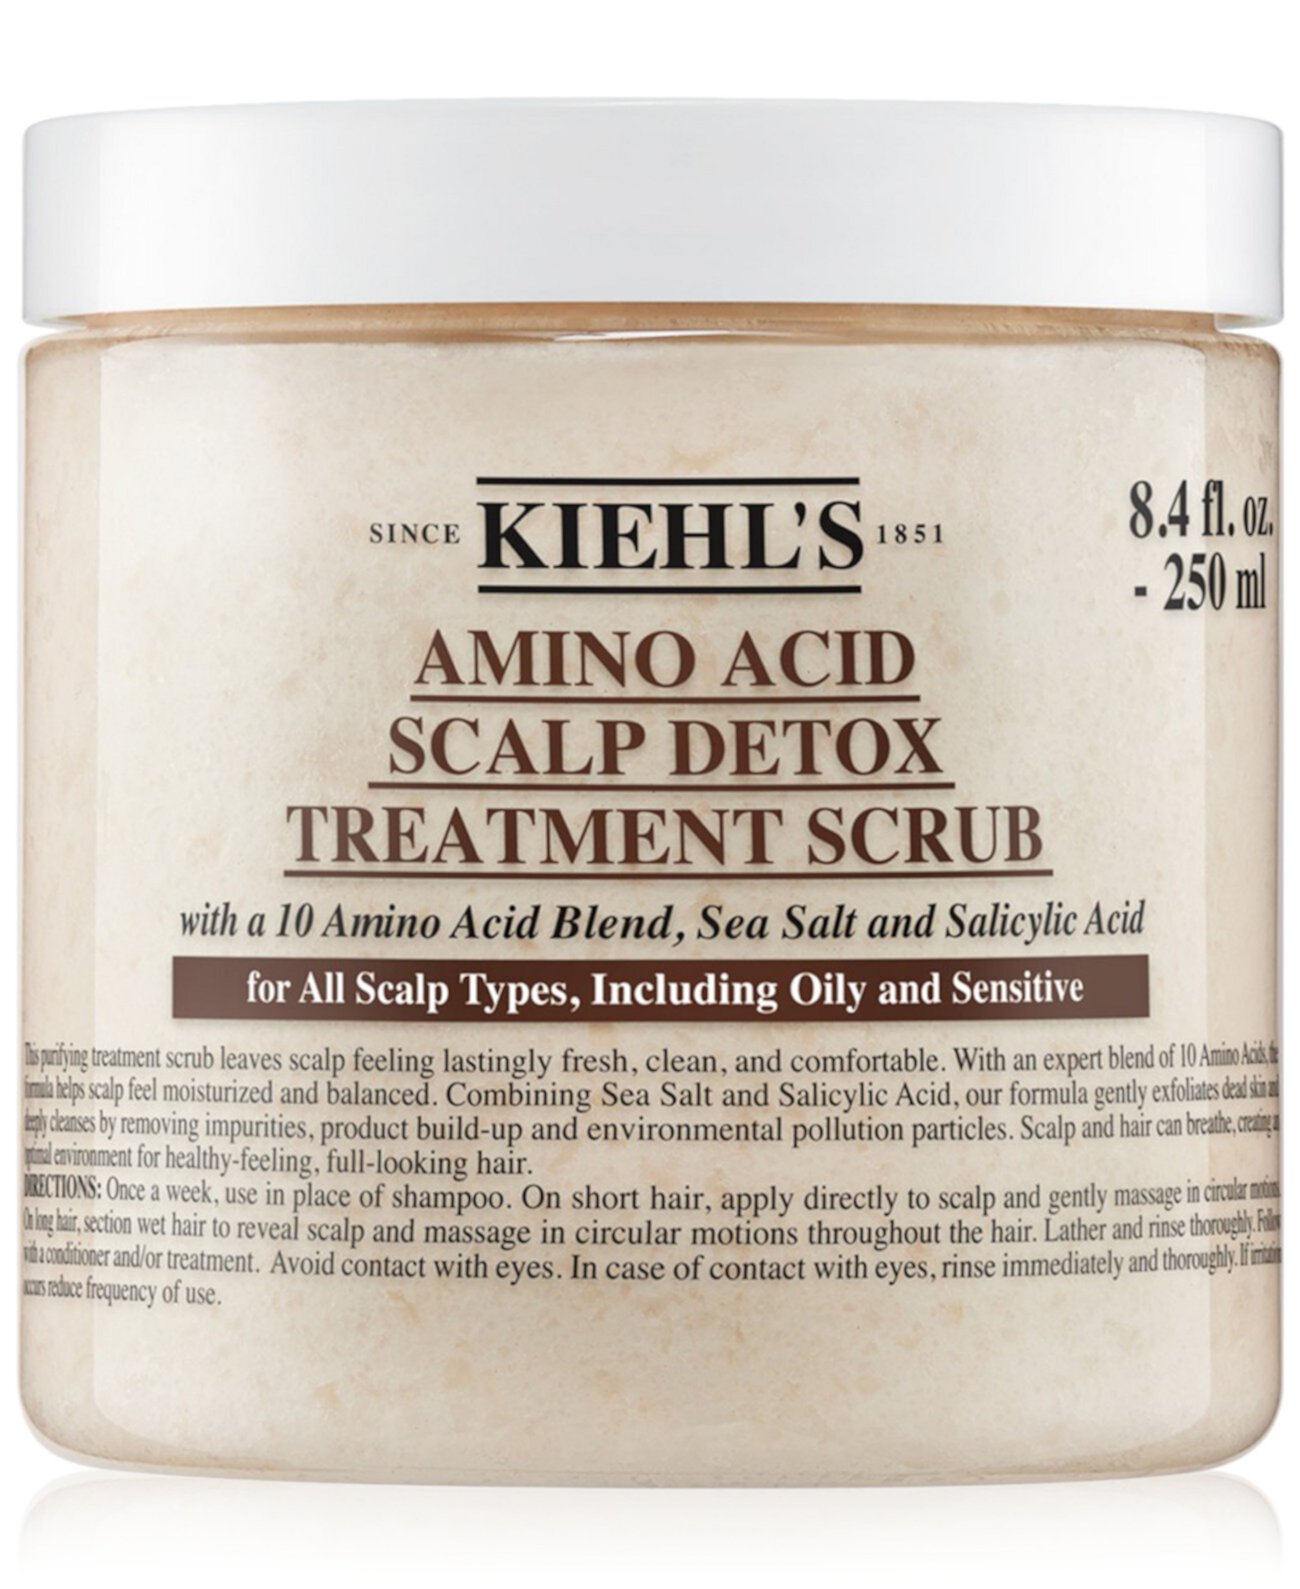 Аминокислотный скраб для детоксикации кожи головы, 8,4 унции. Kiehl's Since 1851